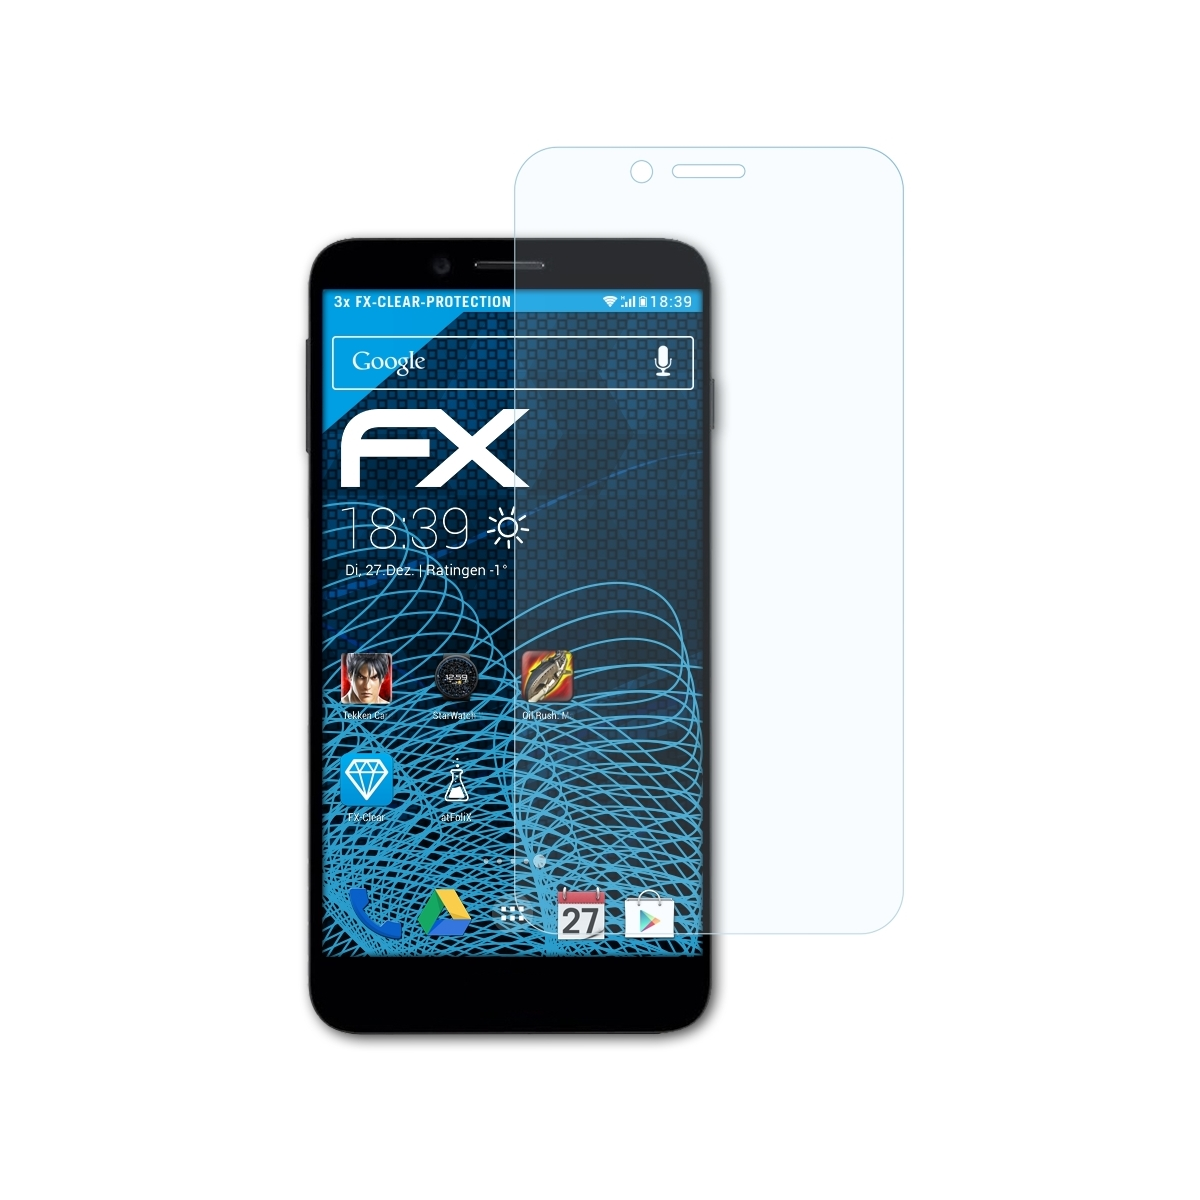 ATFOLIX 3x FX-Clear Displayschutz(für Vestel V3 5580)